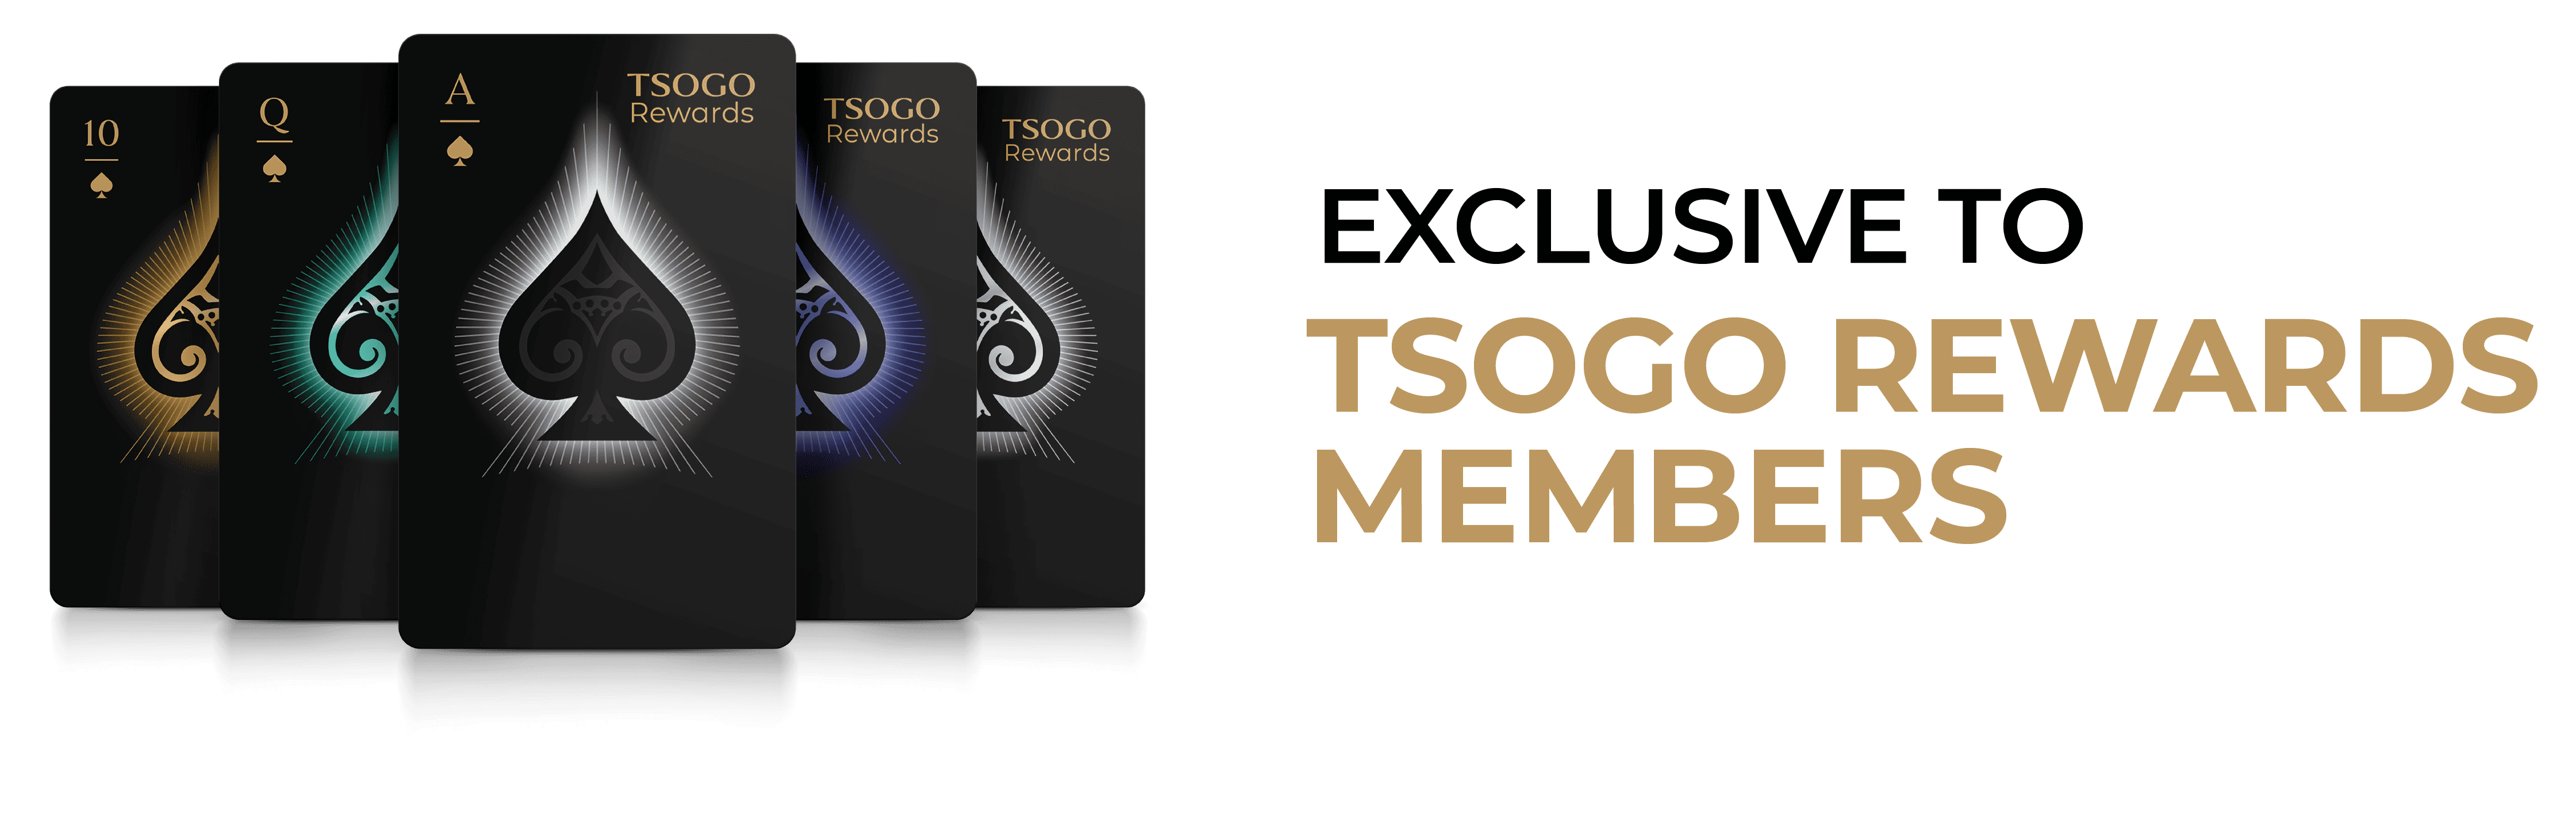 Tsogo Rewards Gaming spa landscape banner